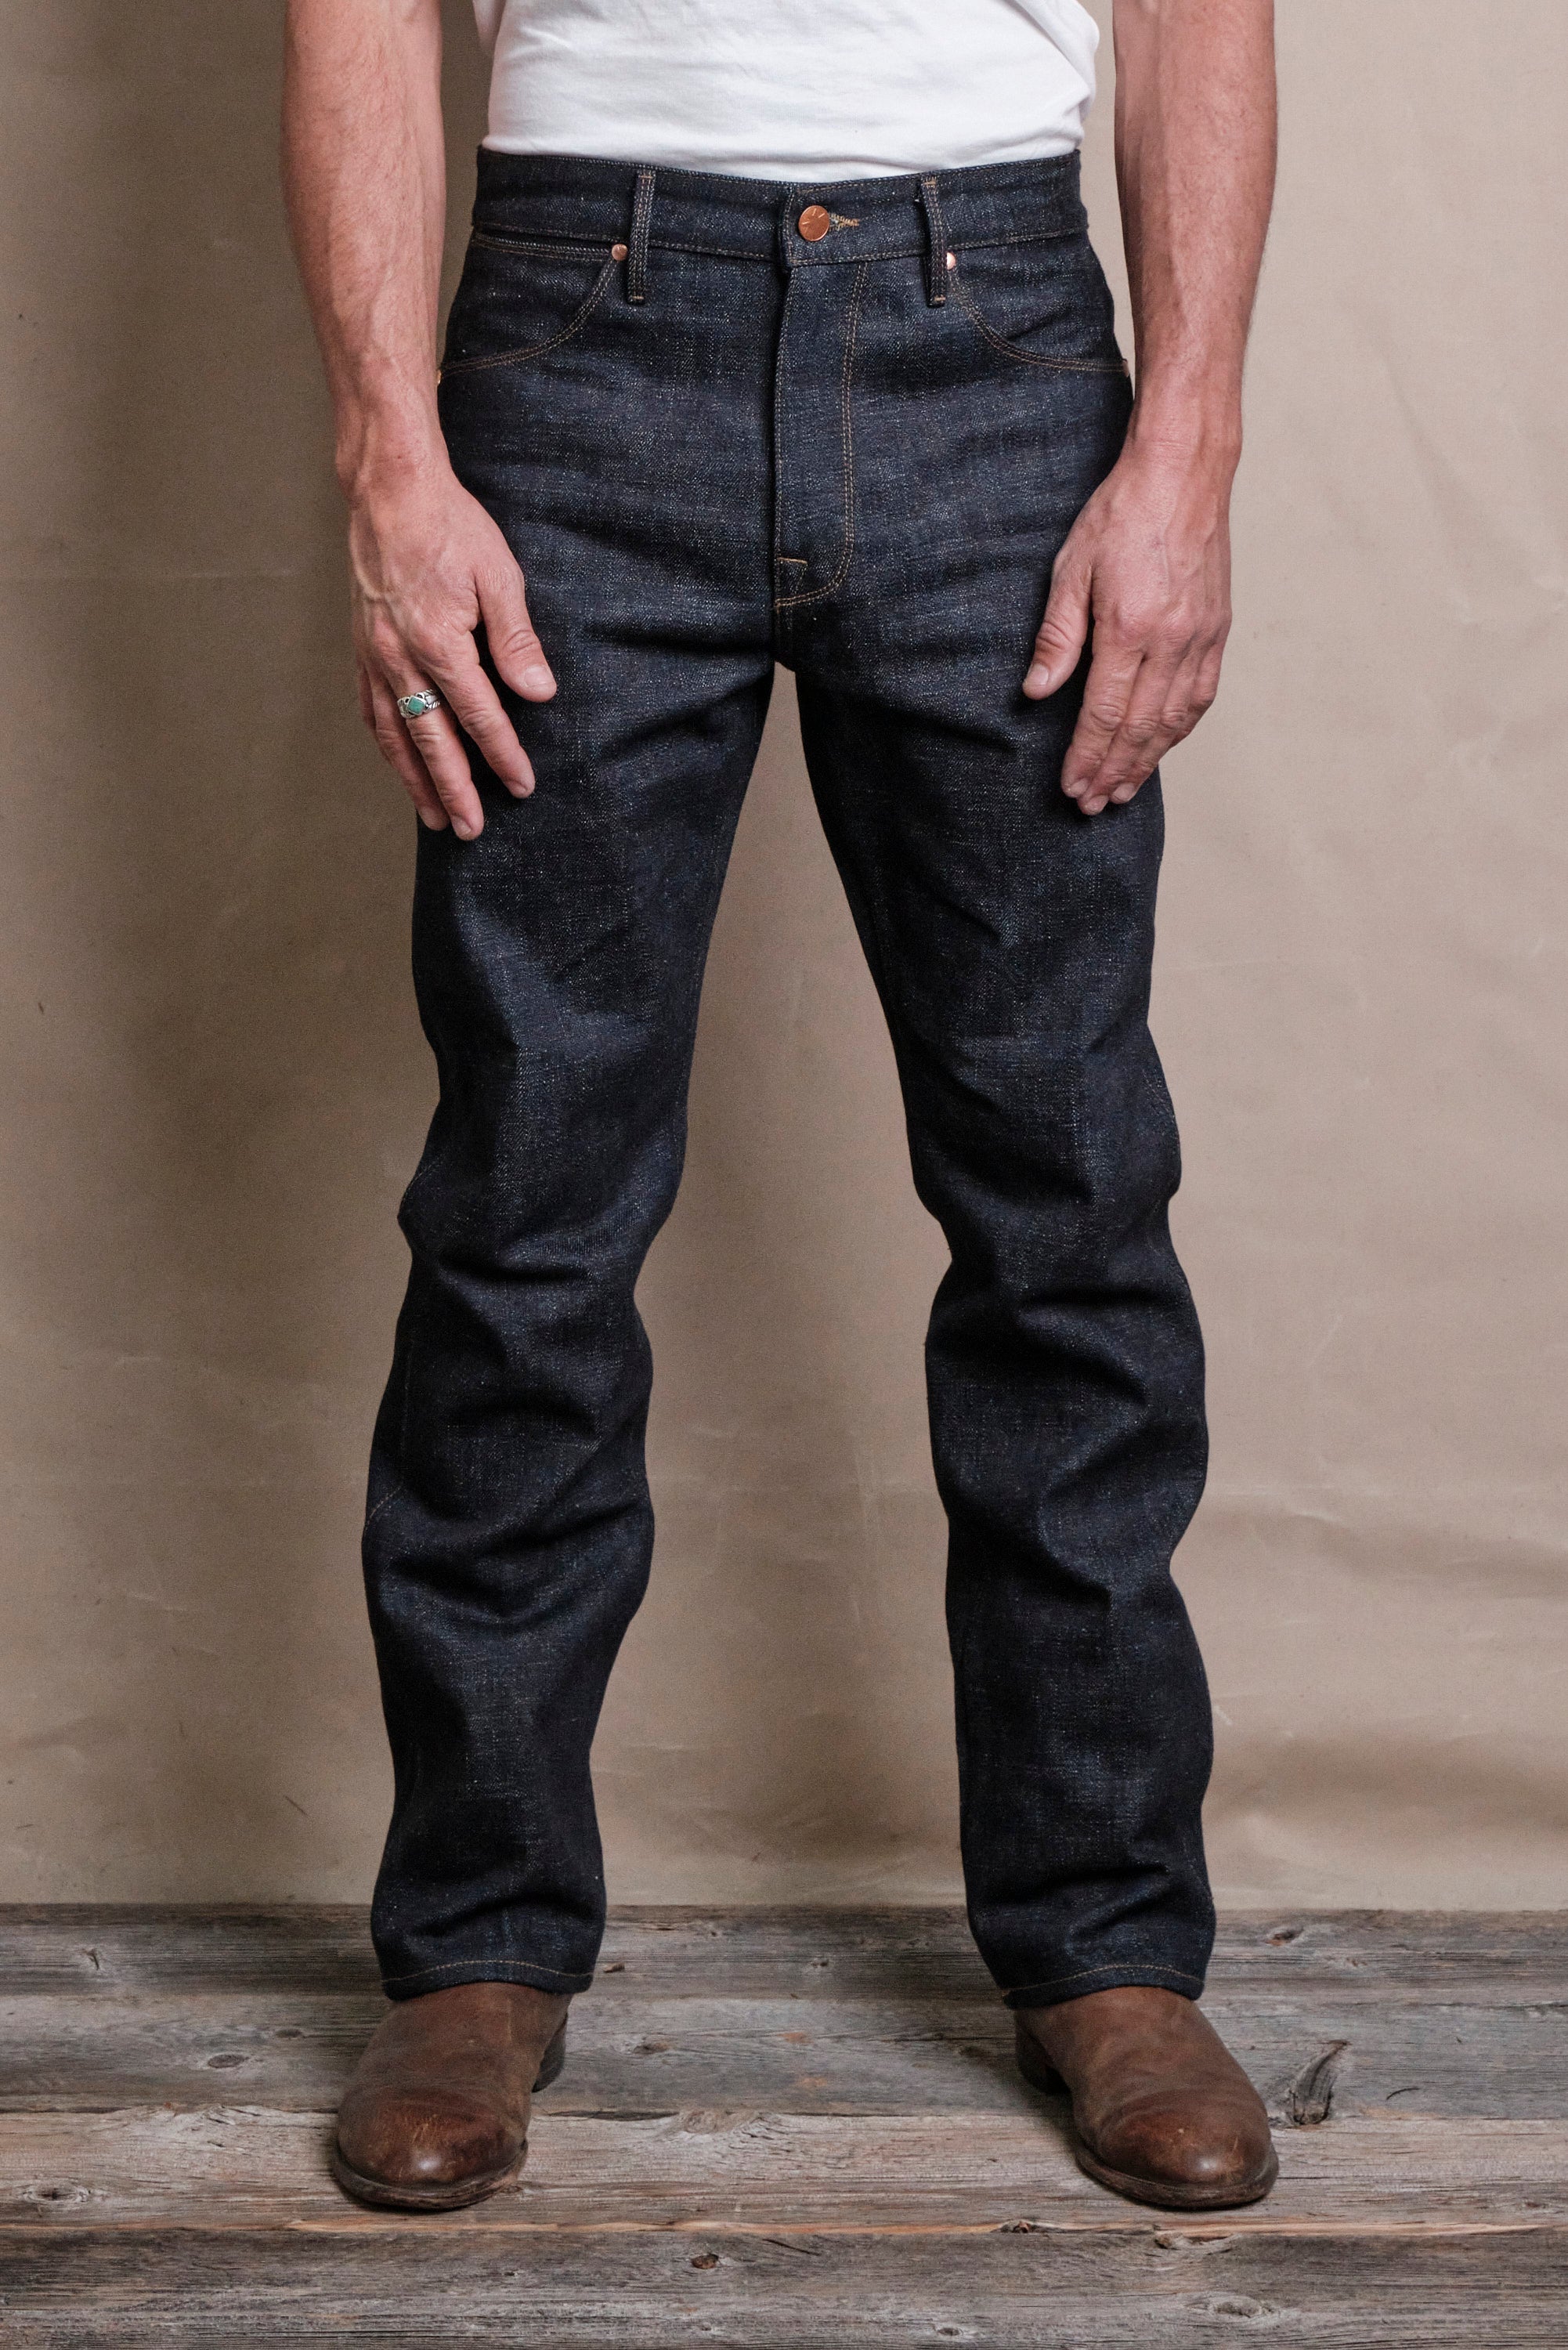 Straight Regular Jeans - Light denim blue - Men | H&M IN